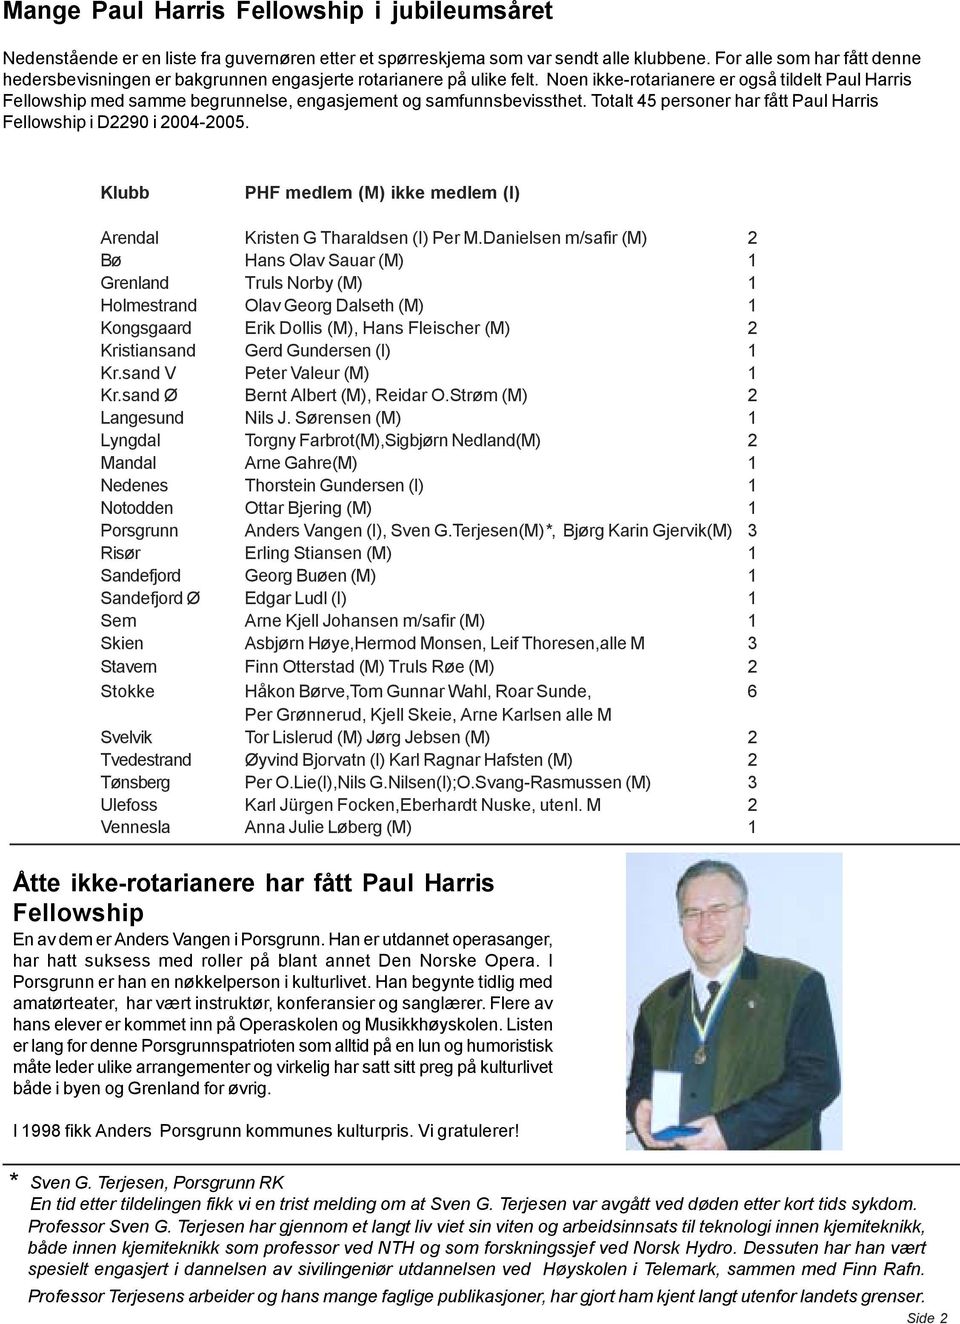 Noen ikke-rotarianere er også tildelt Paul Harris Fellowship med samme begrunnelse, engasjement og samfunnsbevissthet. Totalt 45 personer har fått Paul Harris Fellowship i D2290 i 2004-2005.